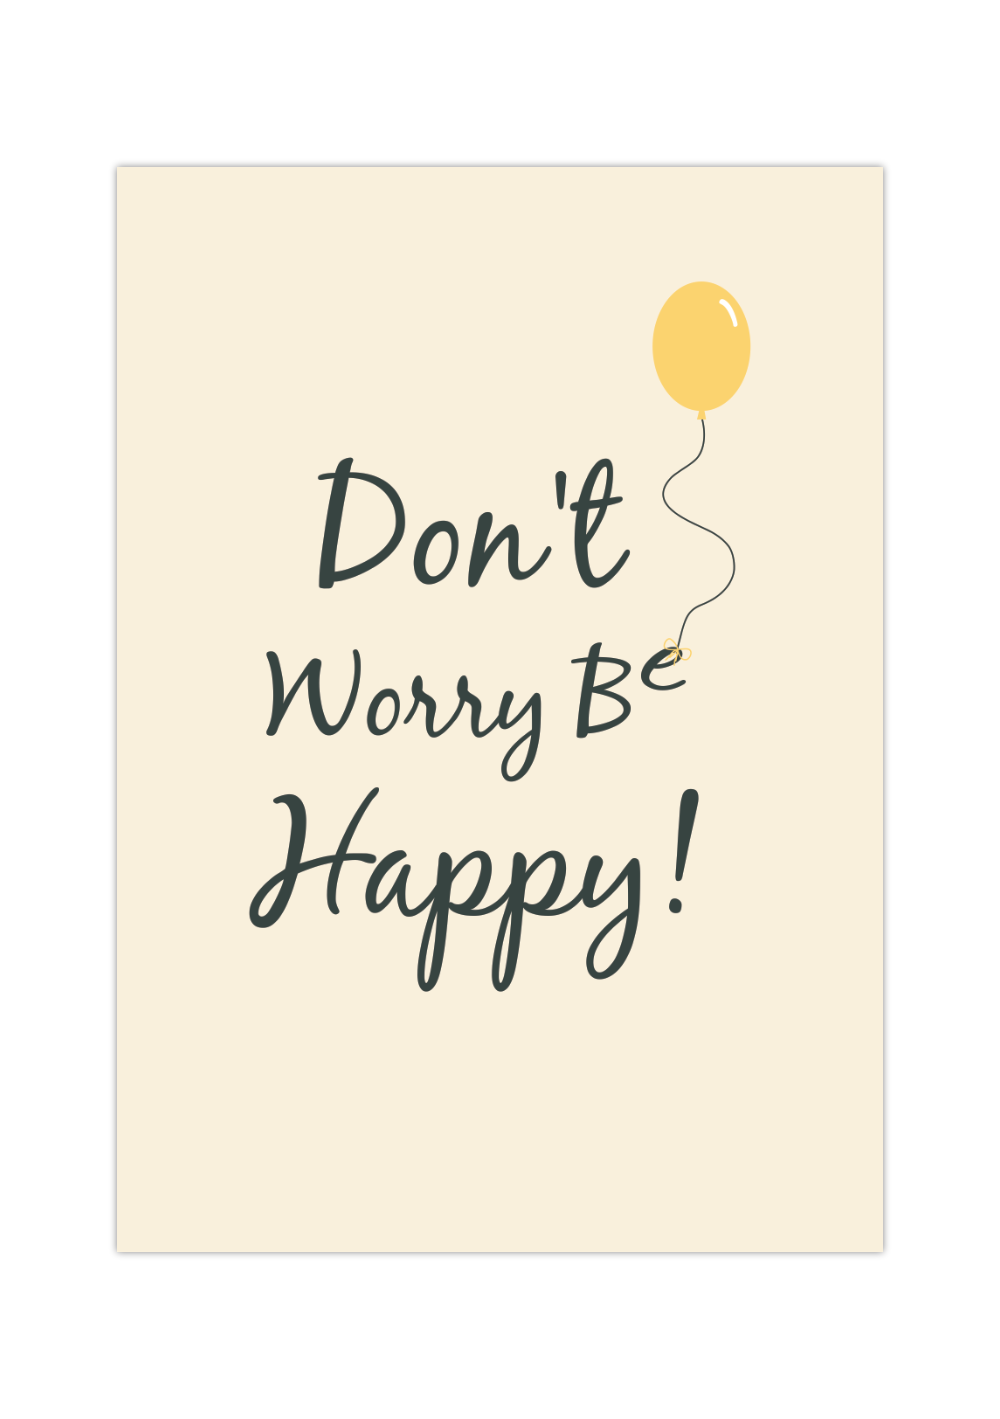 Das Poster zeigt den Spruch "Don't Worry Be Happy" in beige, gelb und dunkelgrüner Schrift. 